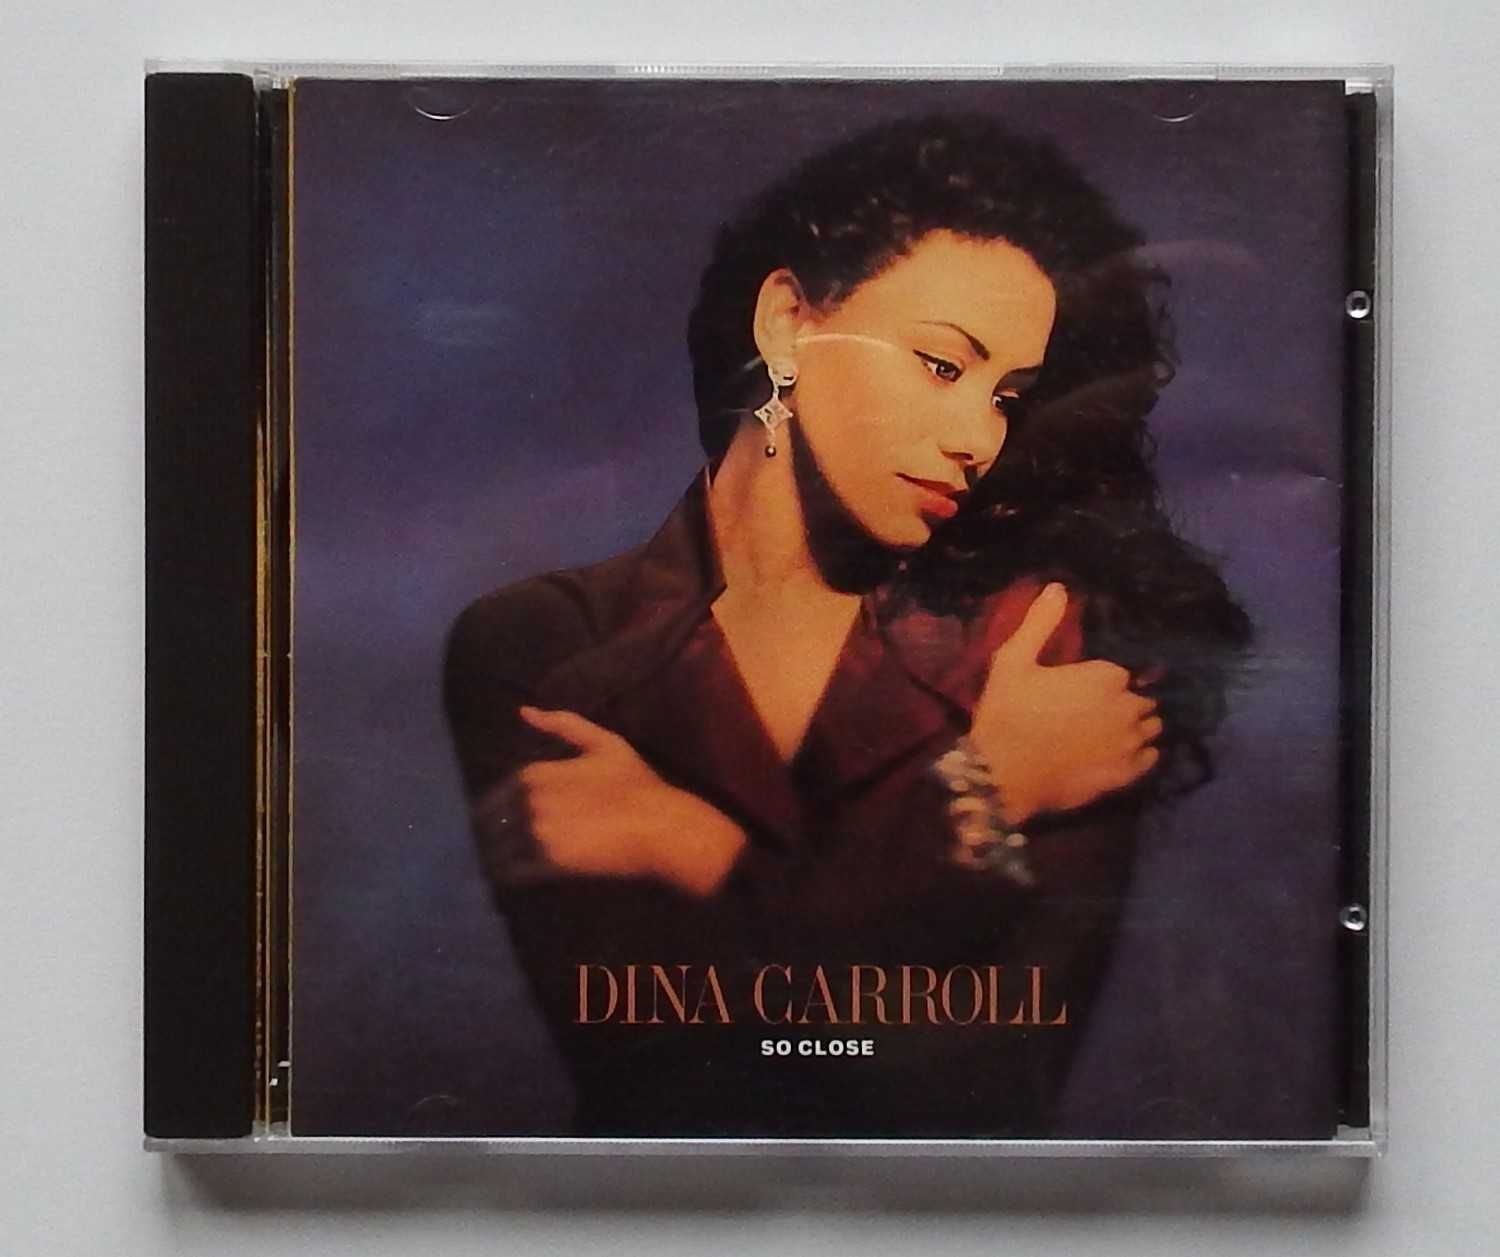 CD Dina Carroll - "So Close"